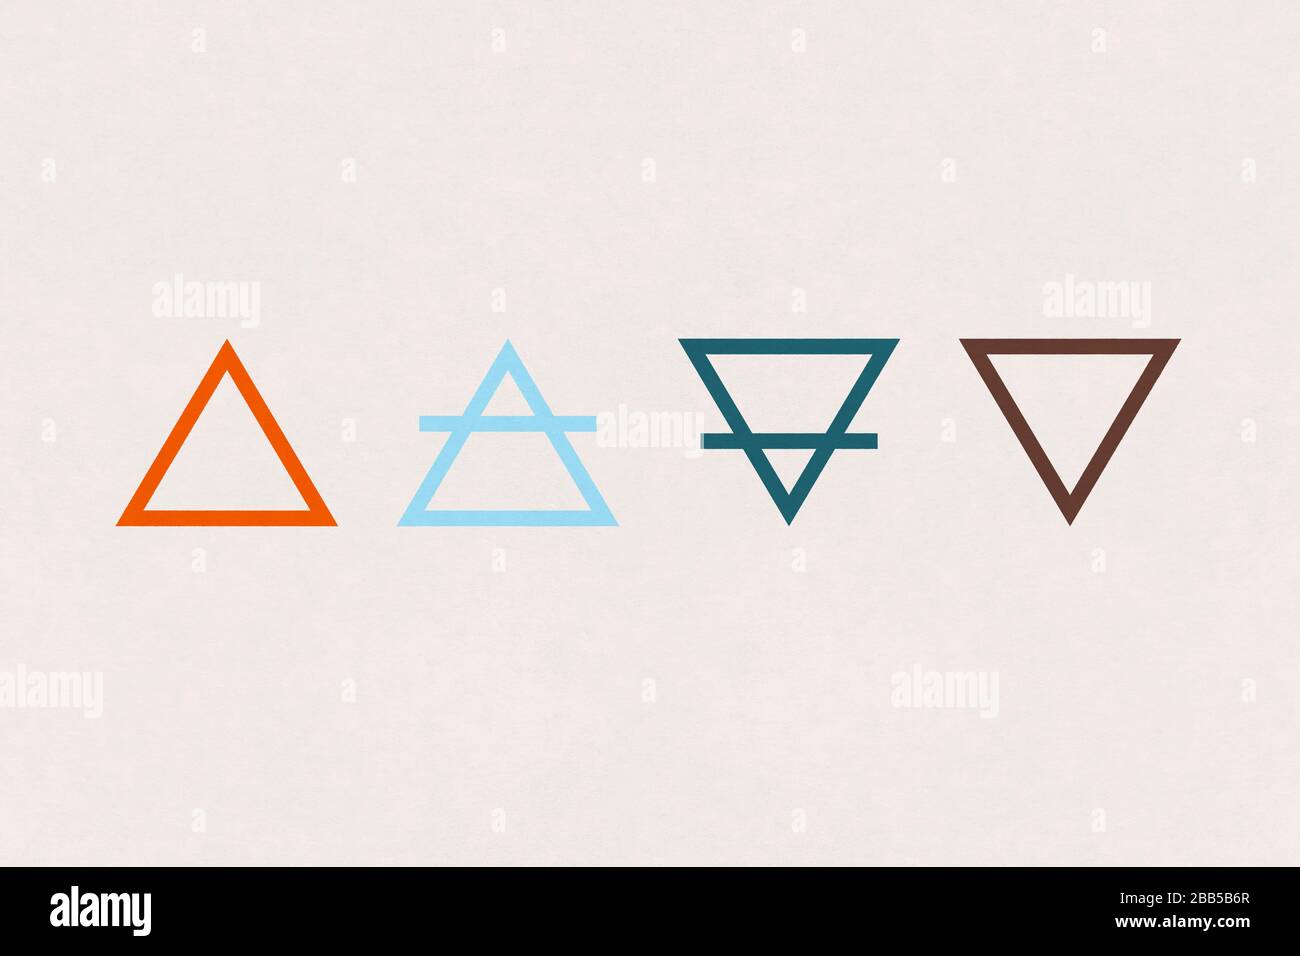 Simbolo dell'alchimia dei quattro elementi (fuoco, aria, terra e acqua) al centro di una vecchia carta. Foto Stock